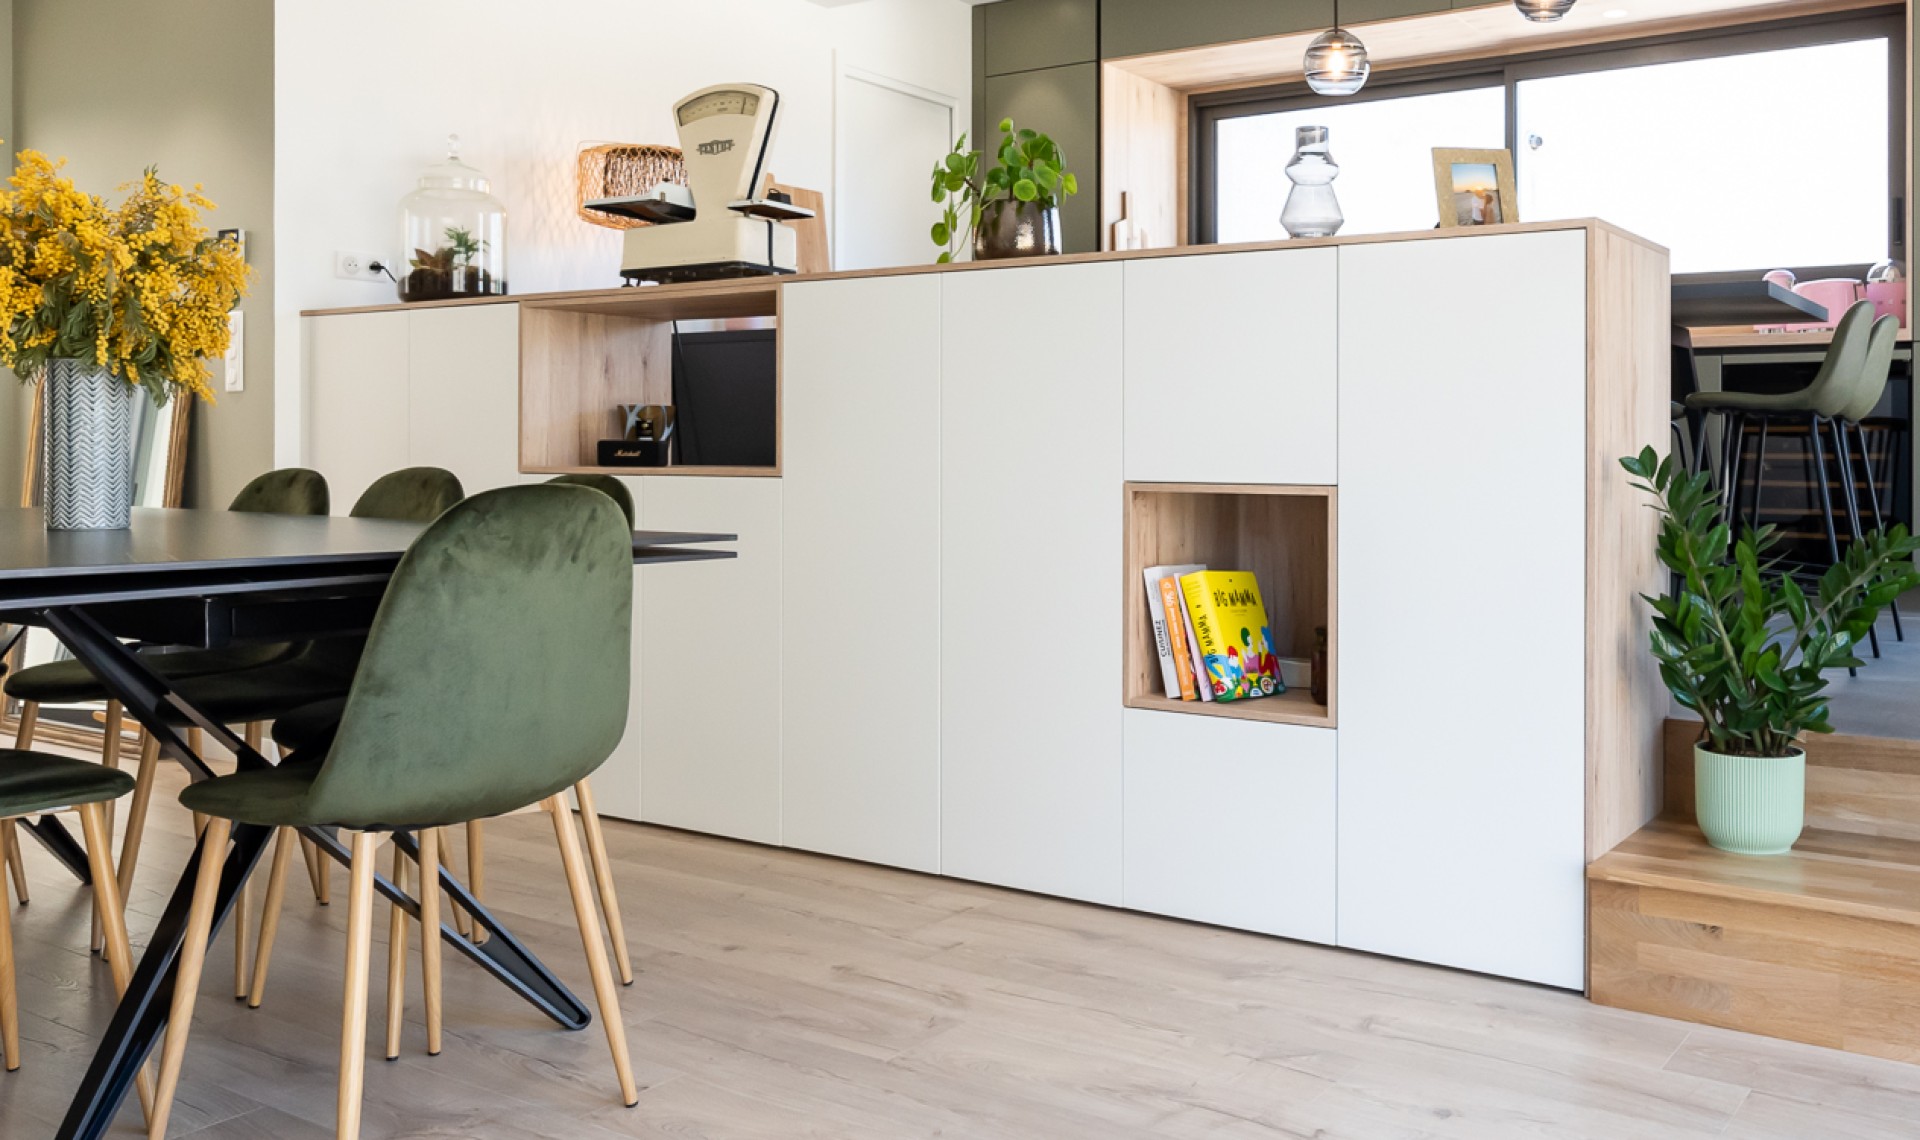 Créer une transition entre la cuisine et la salle à manger grâce à un meuble garde corps.